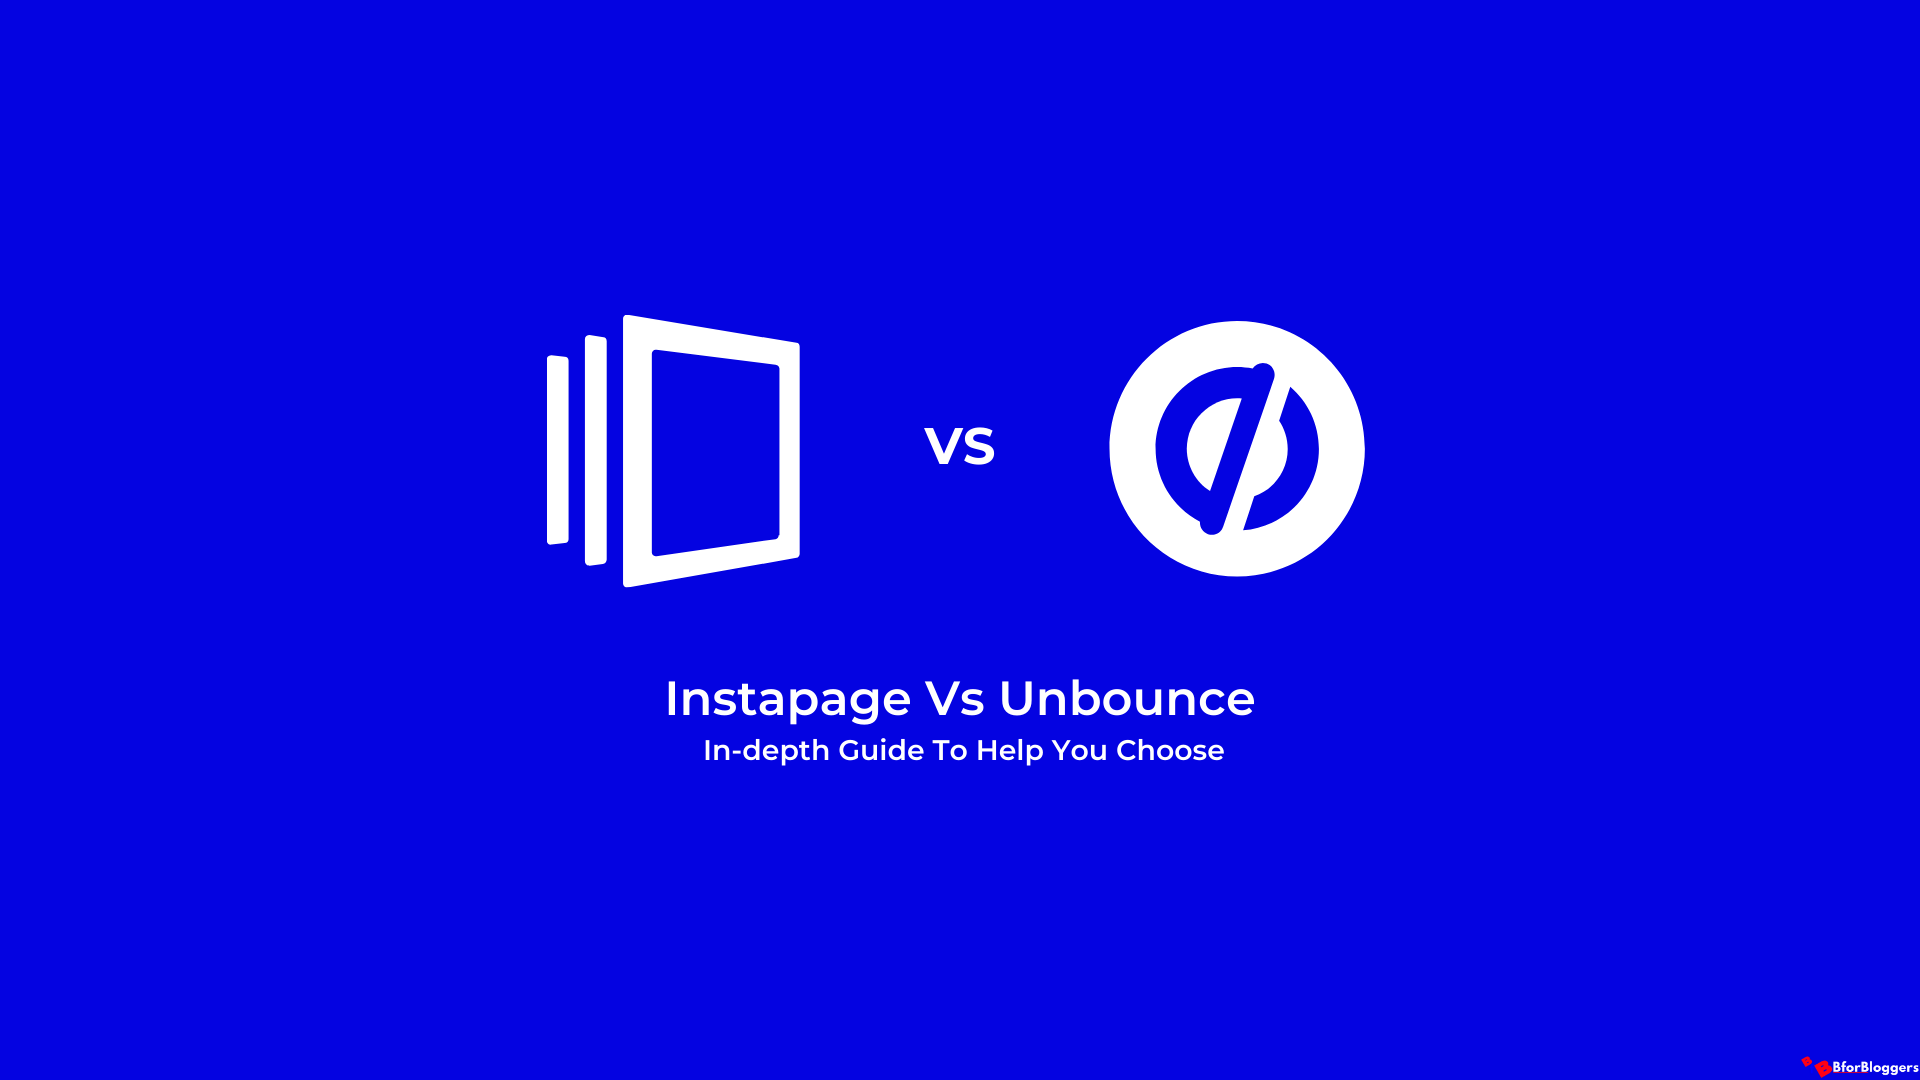 Instapage ve Unbounce: Karşılaştırıldı